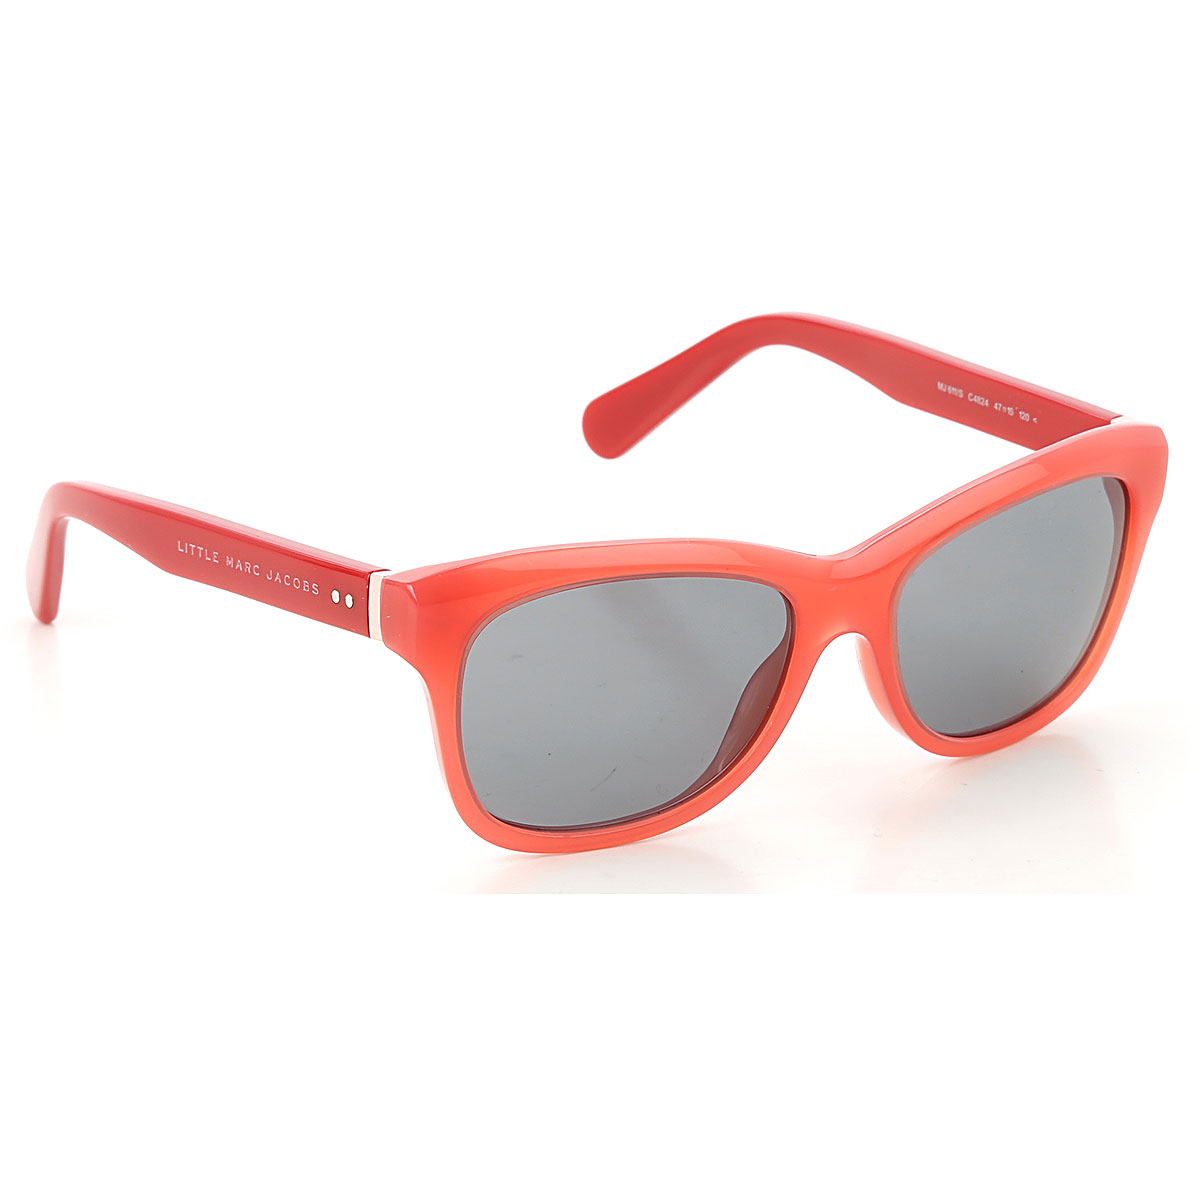 Marc Jacobs Kinder Sonnenbrille für Jungen Günstig im Sale, Rot Pinkfarben, 2017